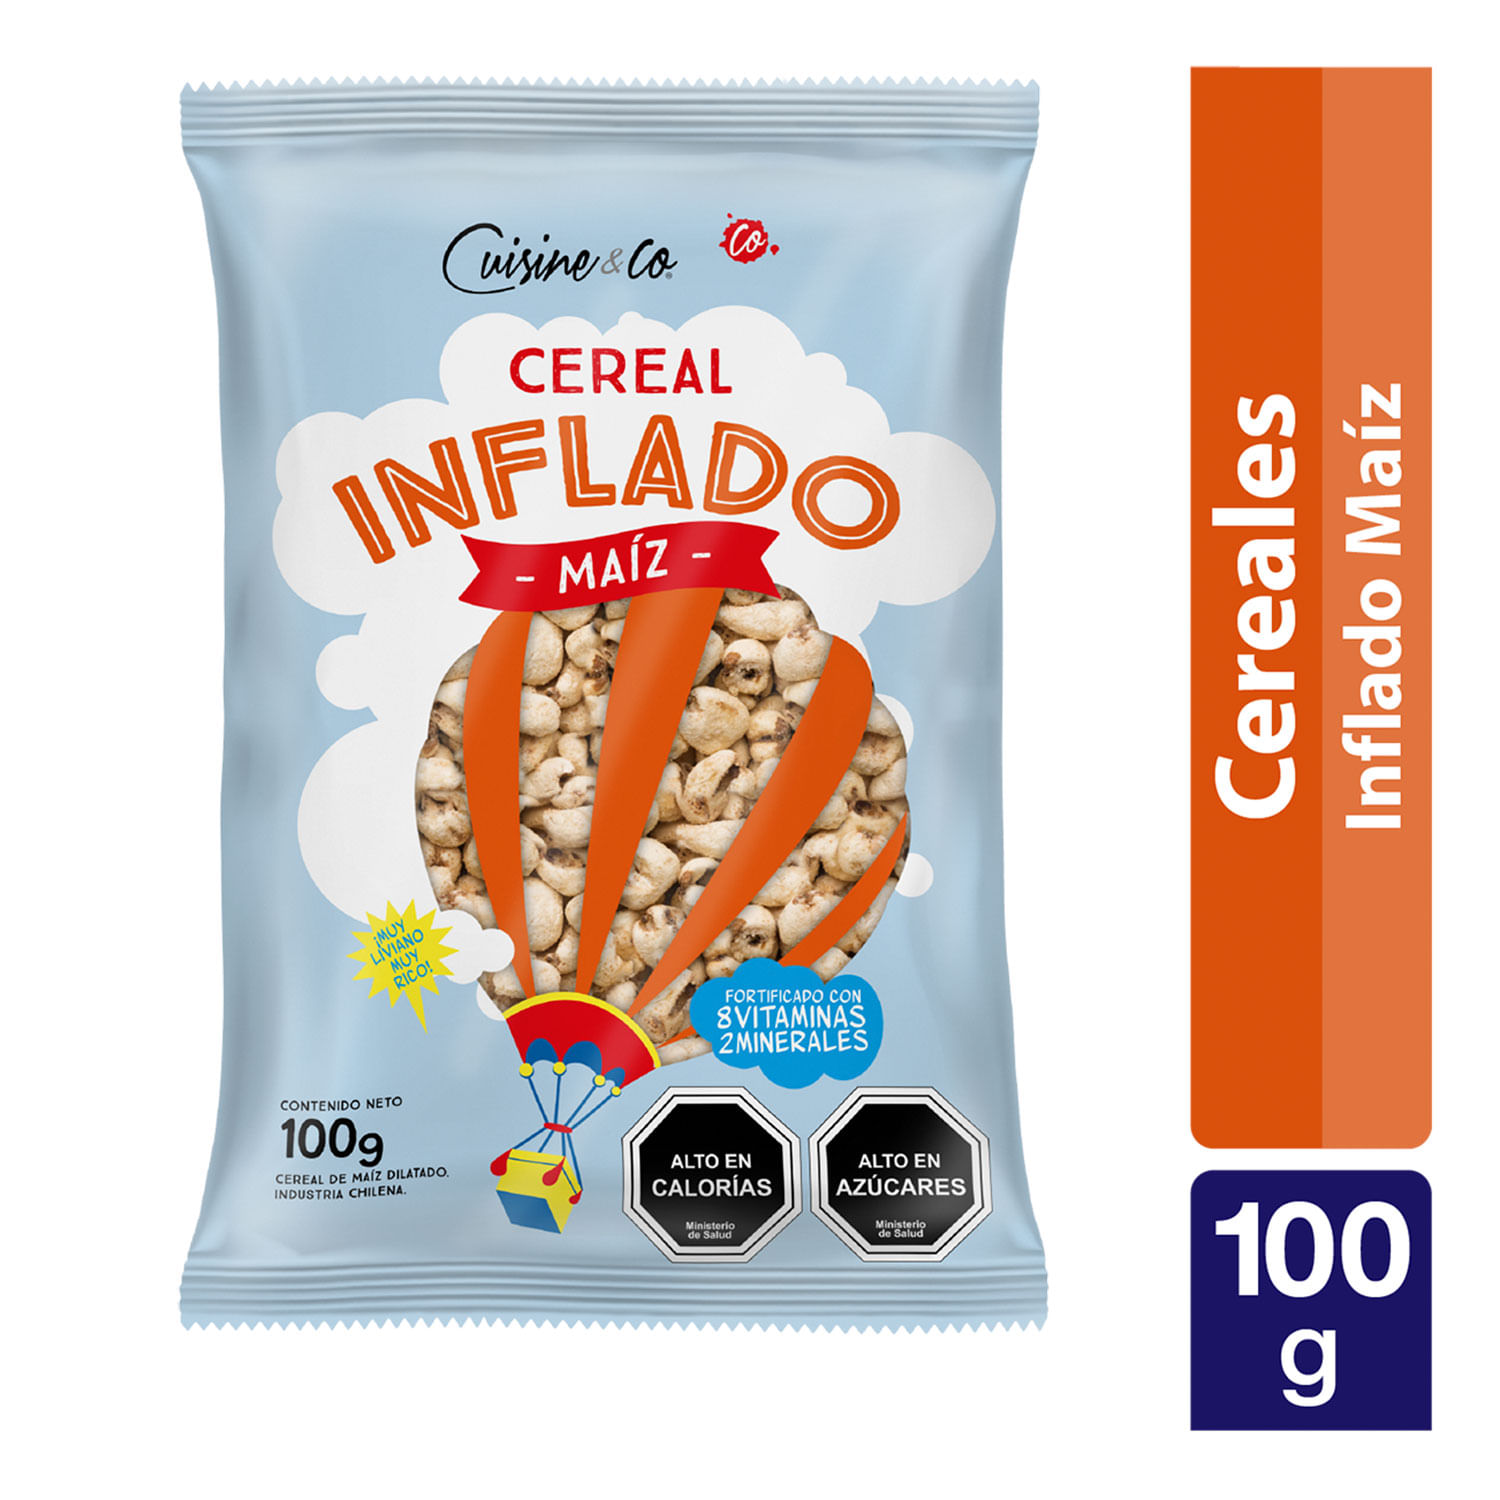 Cereal Endulzado Ecovida 280g